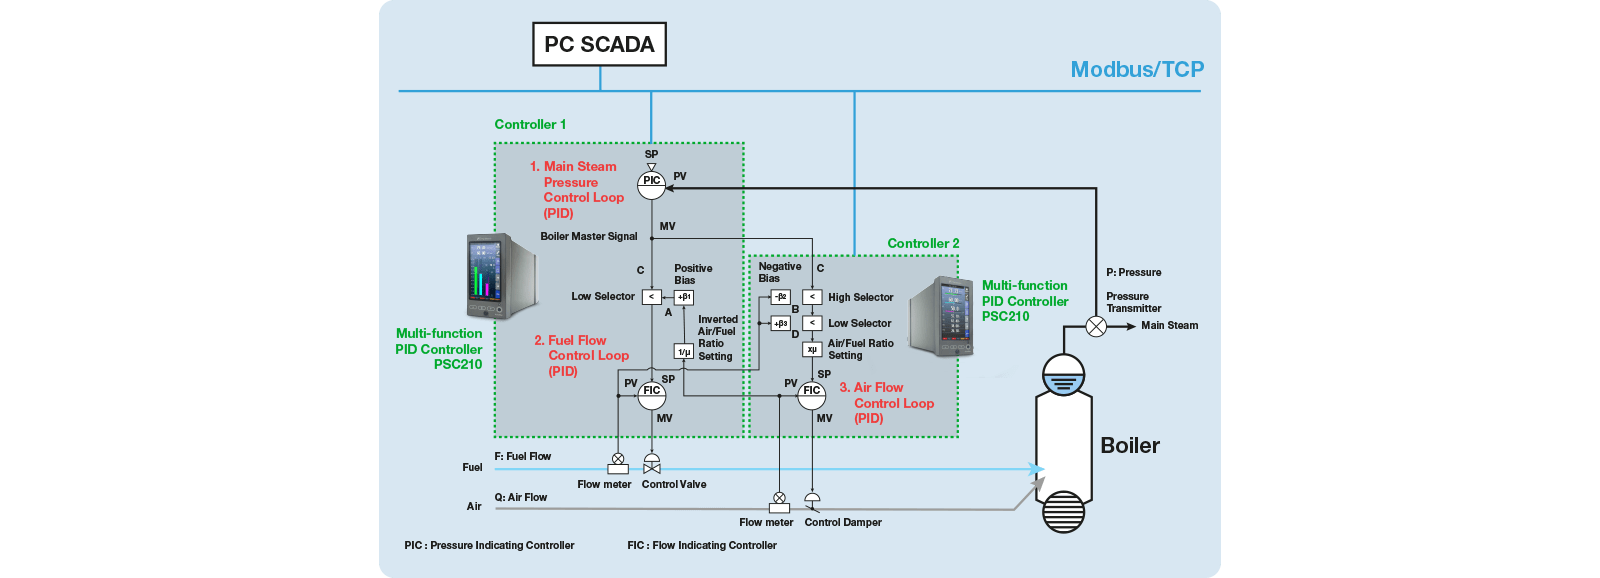 exemplo de um esquema de configuração do circuito de controlo pt